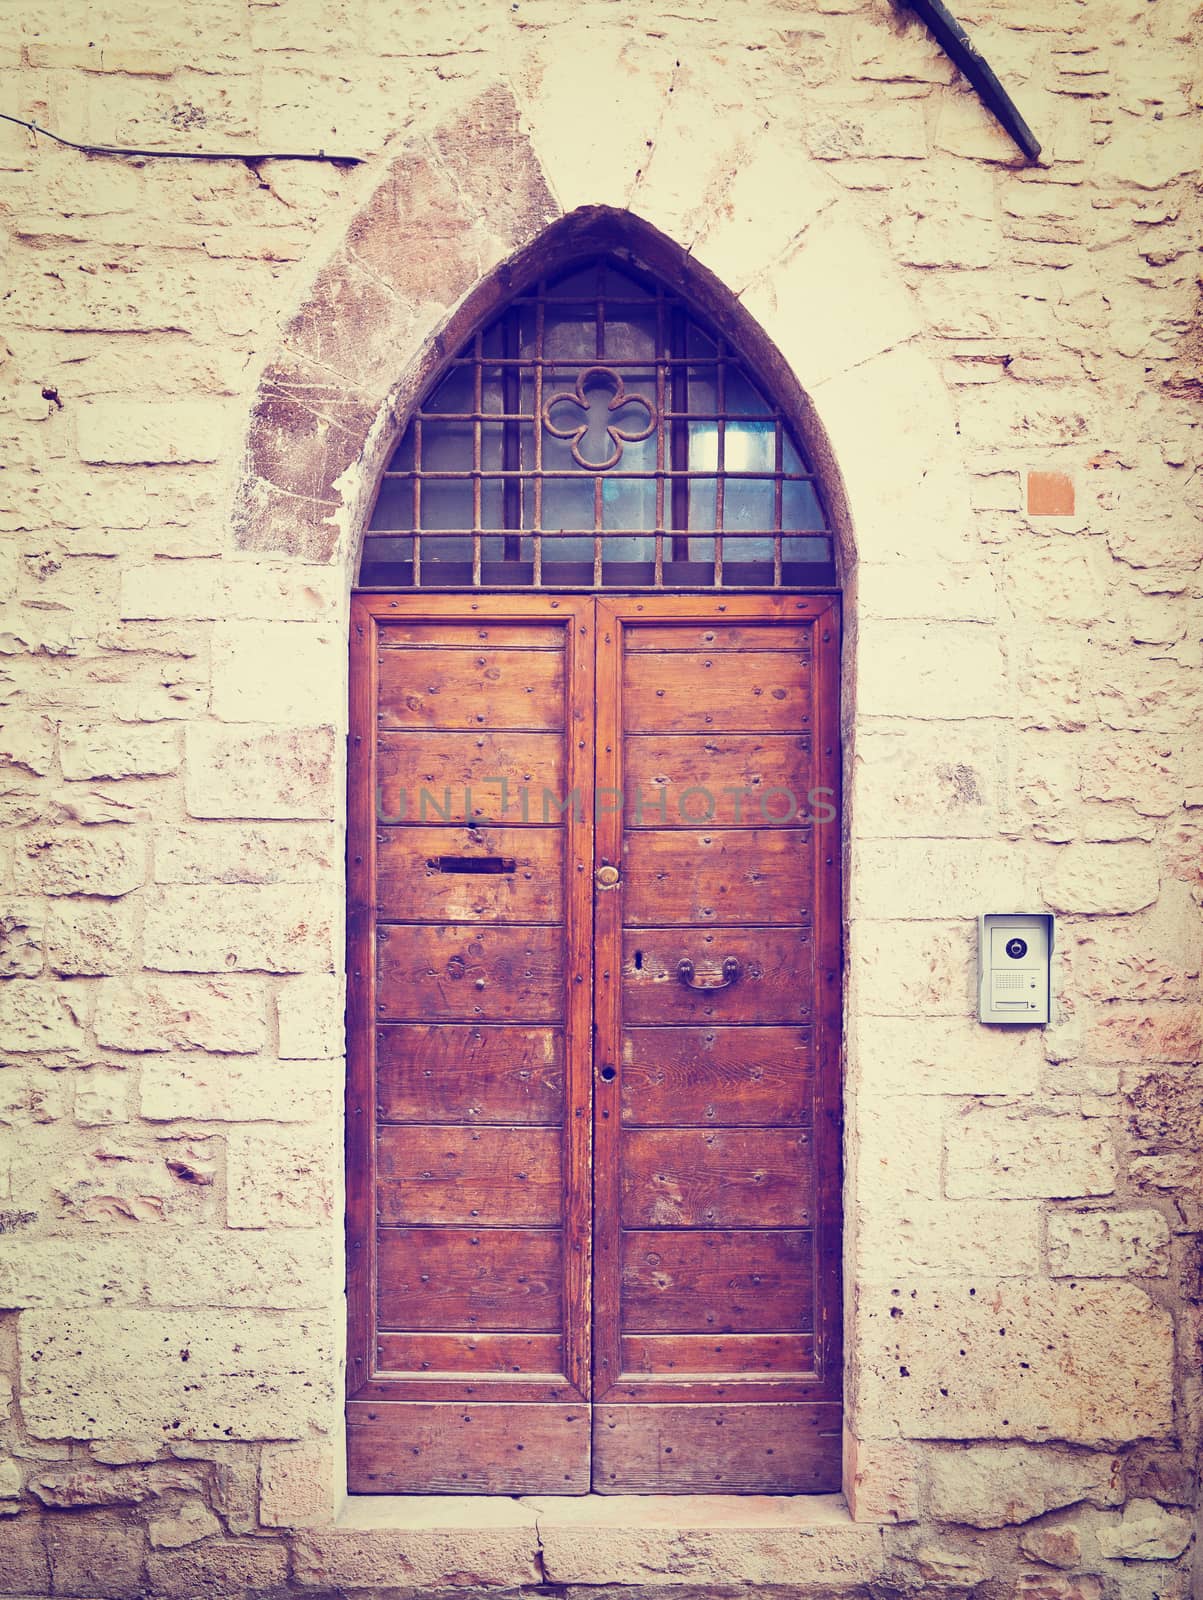 Wooden Ancient Italian Door in Historic Center, Instagram Effect